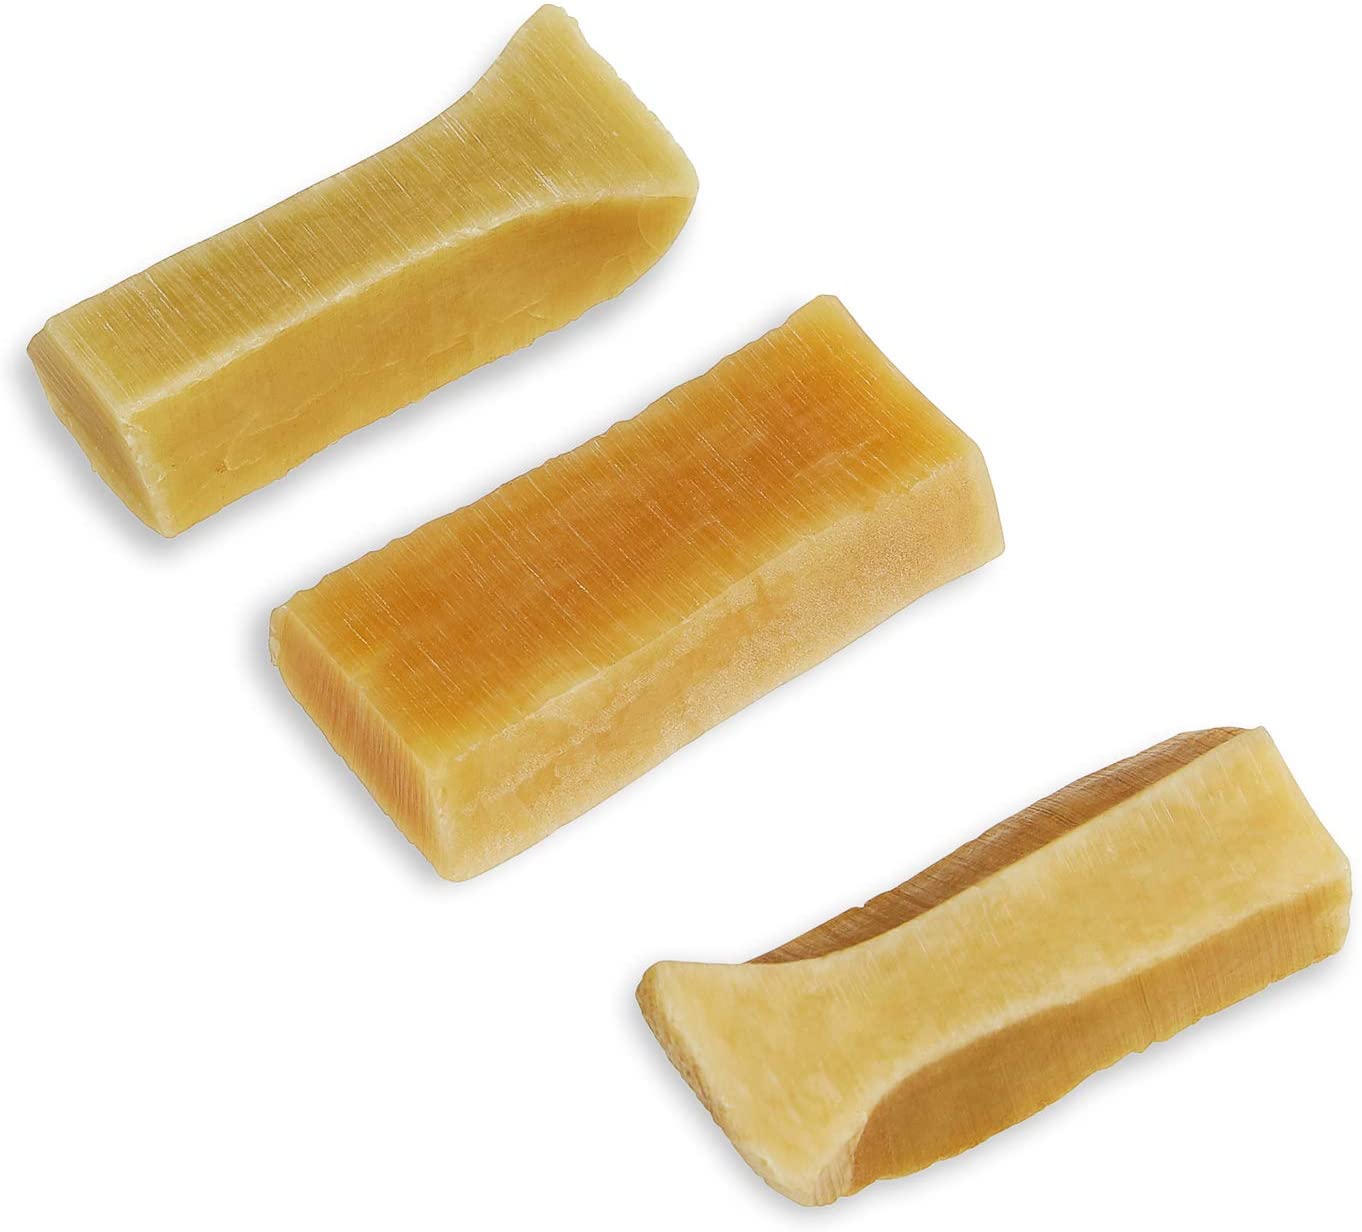  Chew natural del perro, hecho de la leche de Yak, 3 piezas (Perros pequeños) 